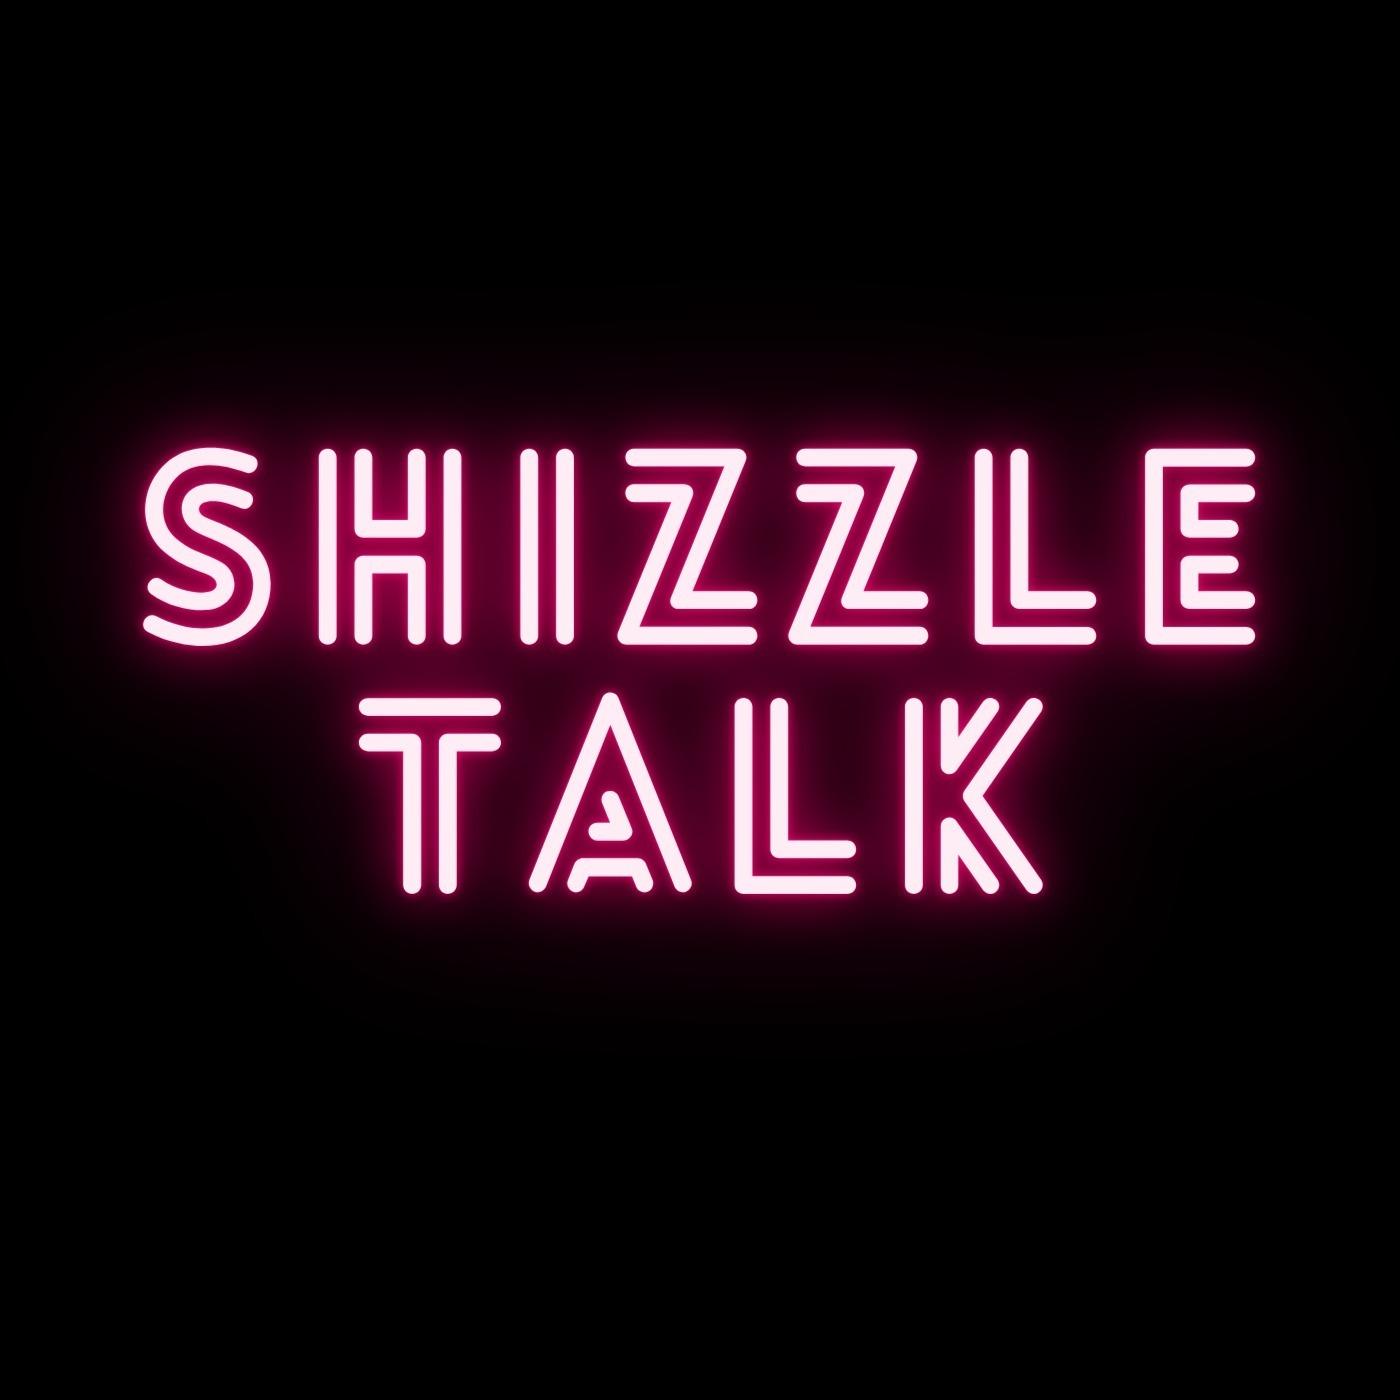 Shizzle Talk